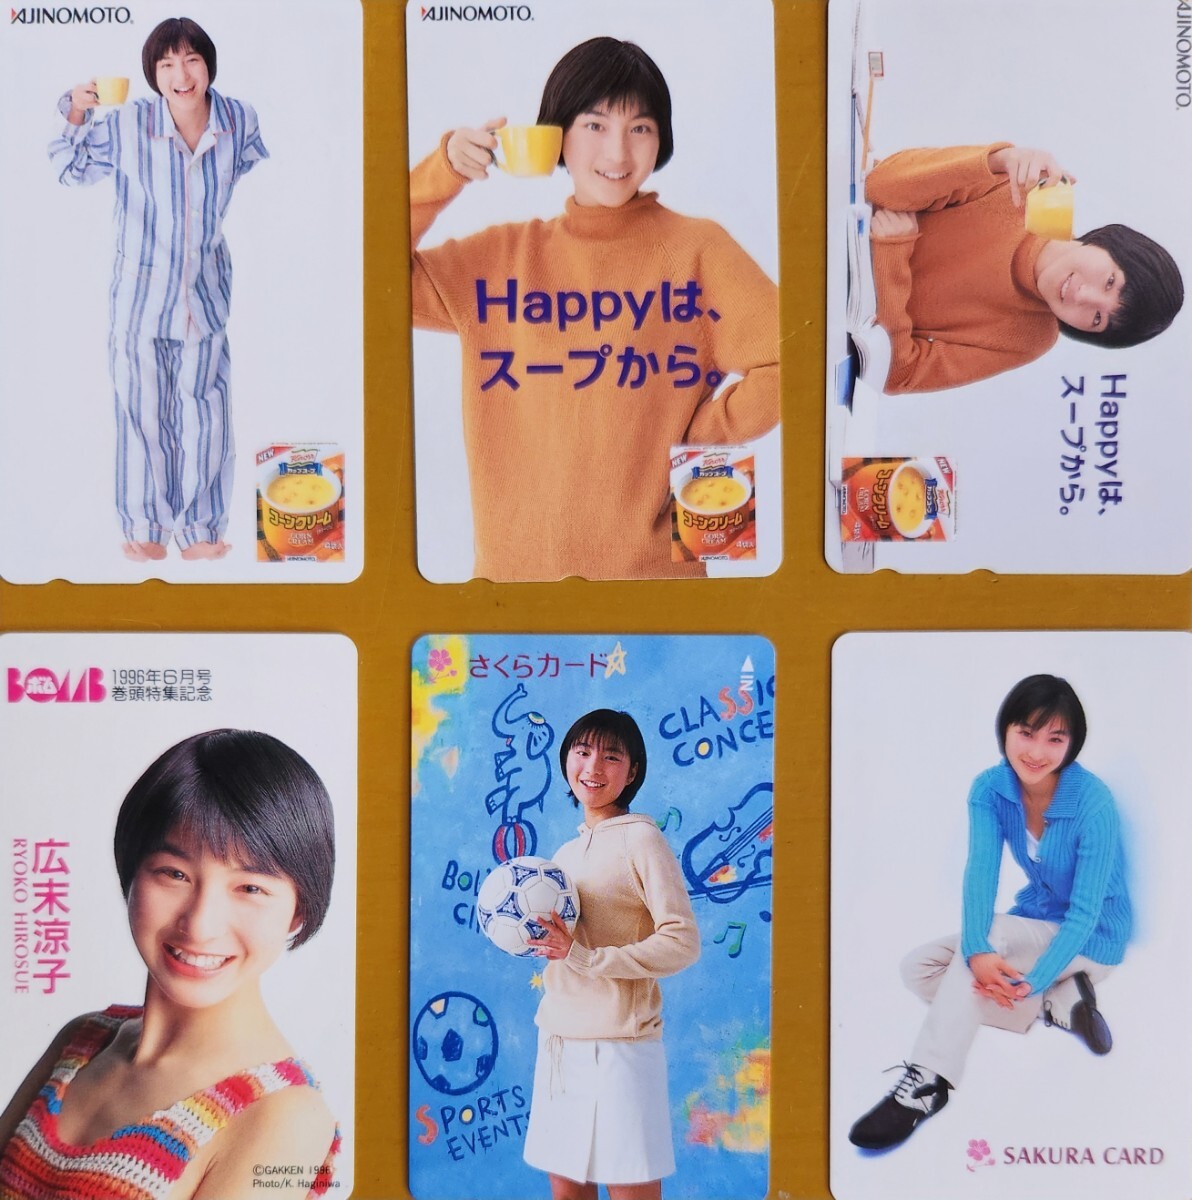  Hirosue Ryouko не использовался телефонная карточка 6 шт. комплект 50 частотность телефонная карточка идол женщина super 